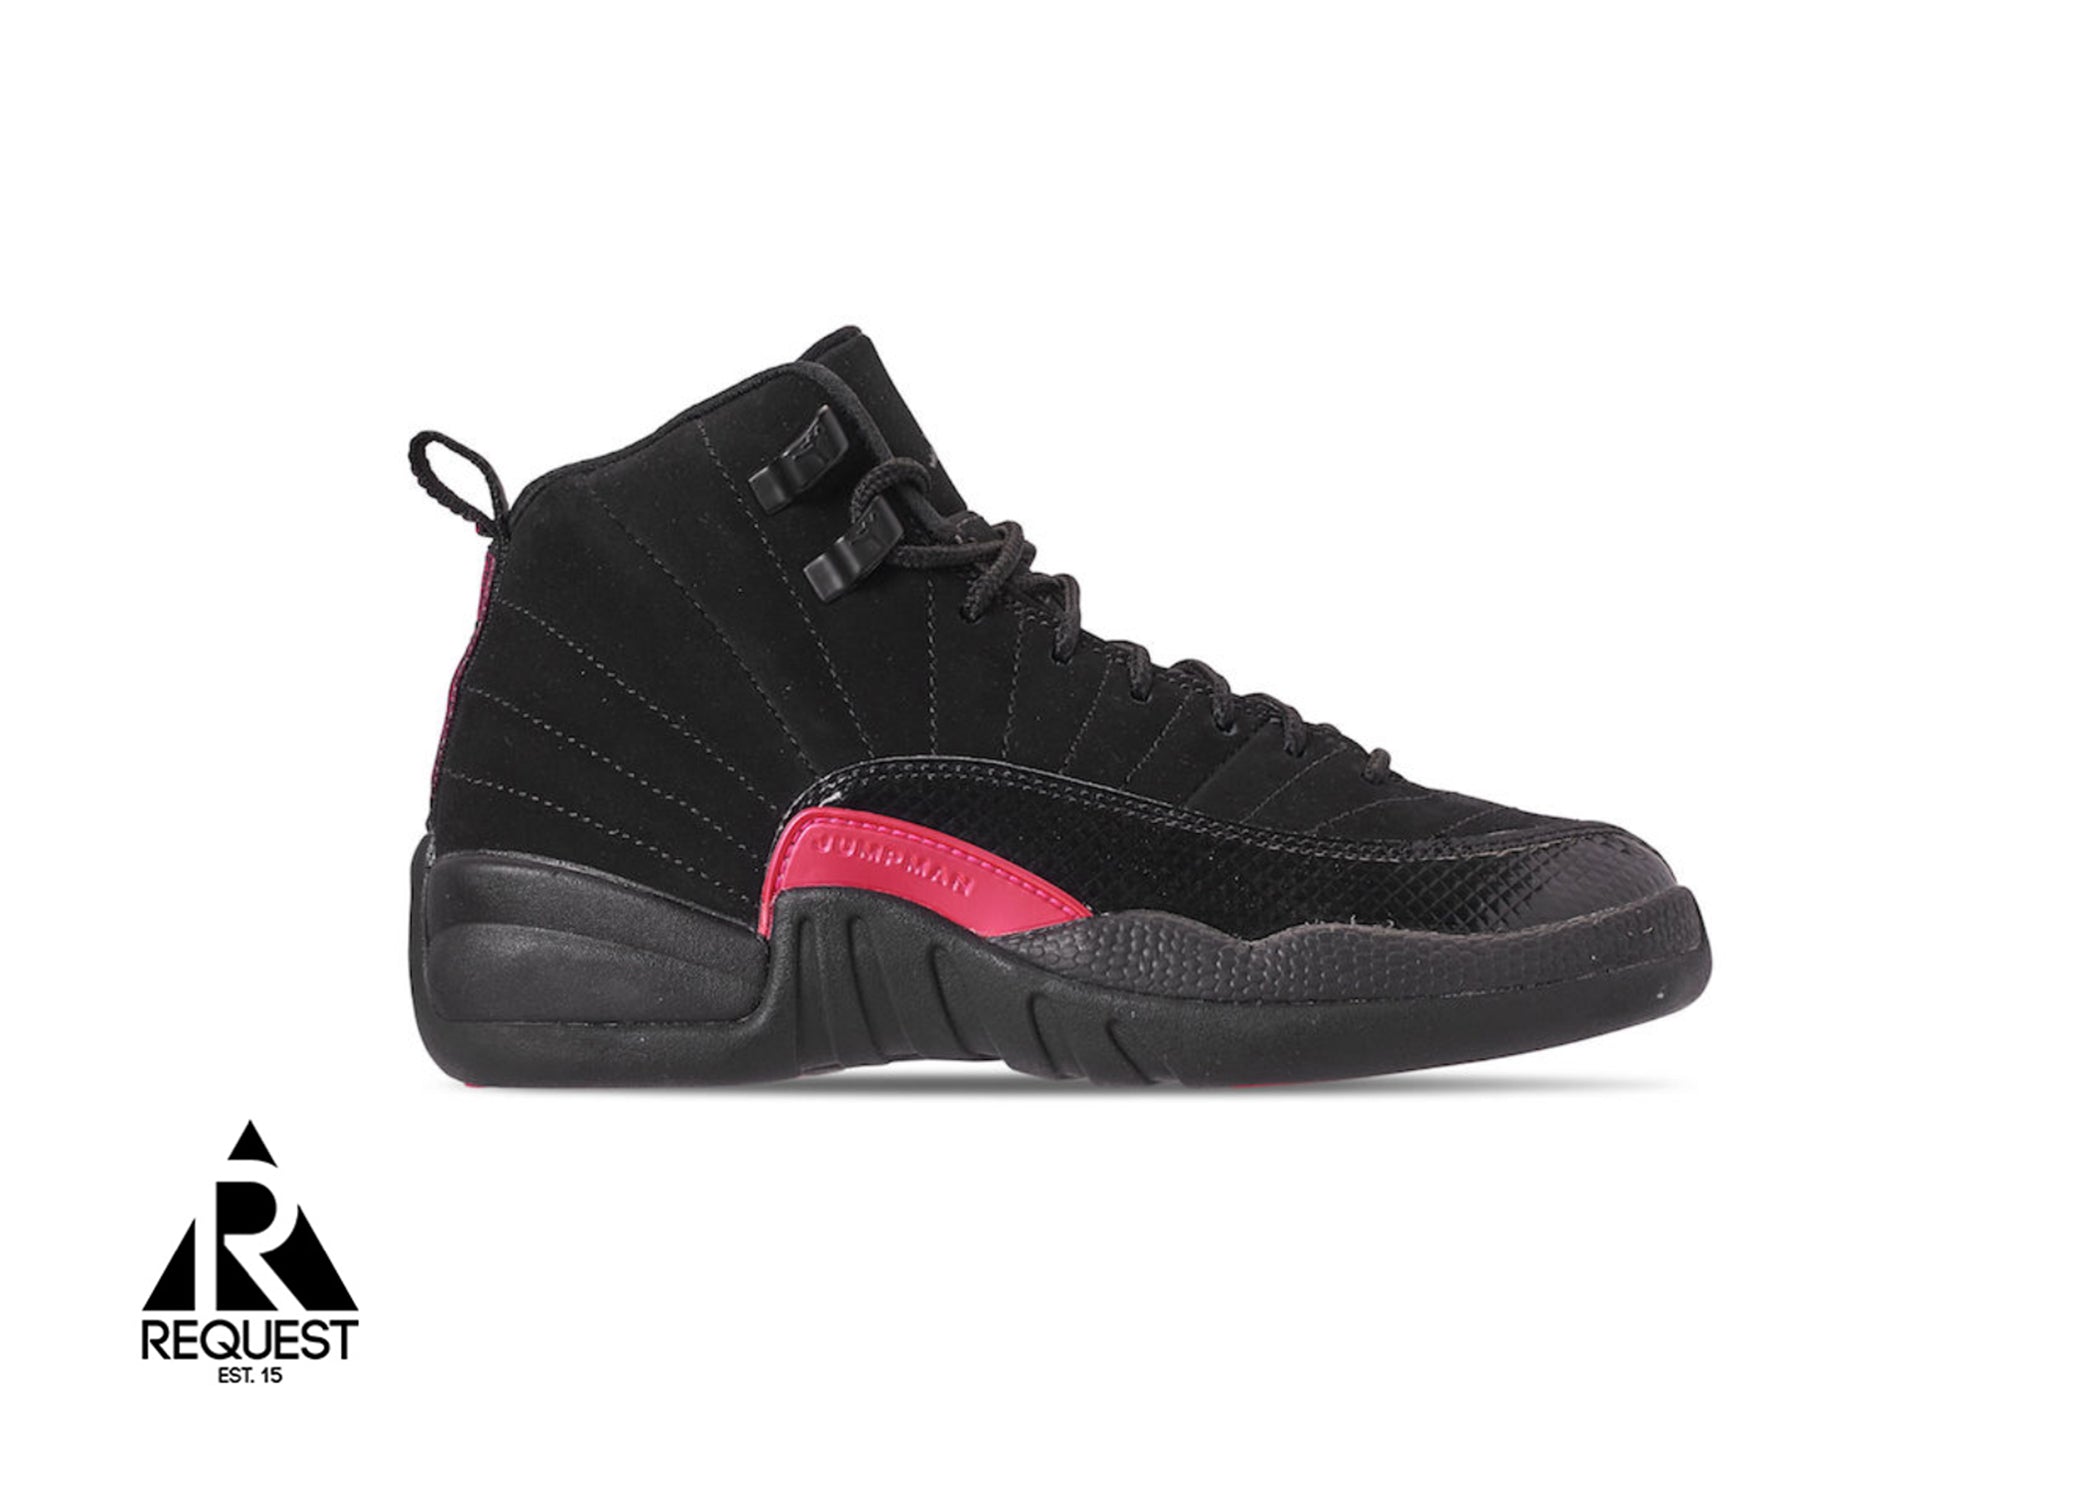 Air Jordan 12 Retro “Black Rush Pink”